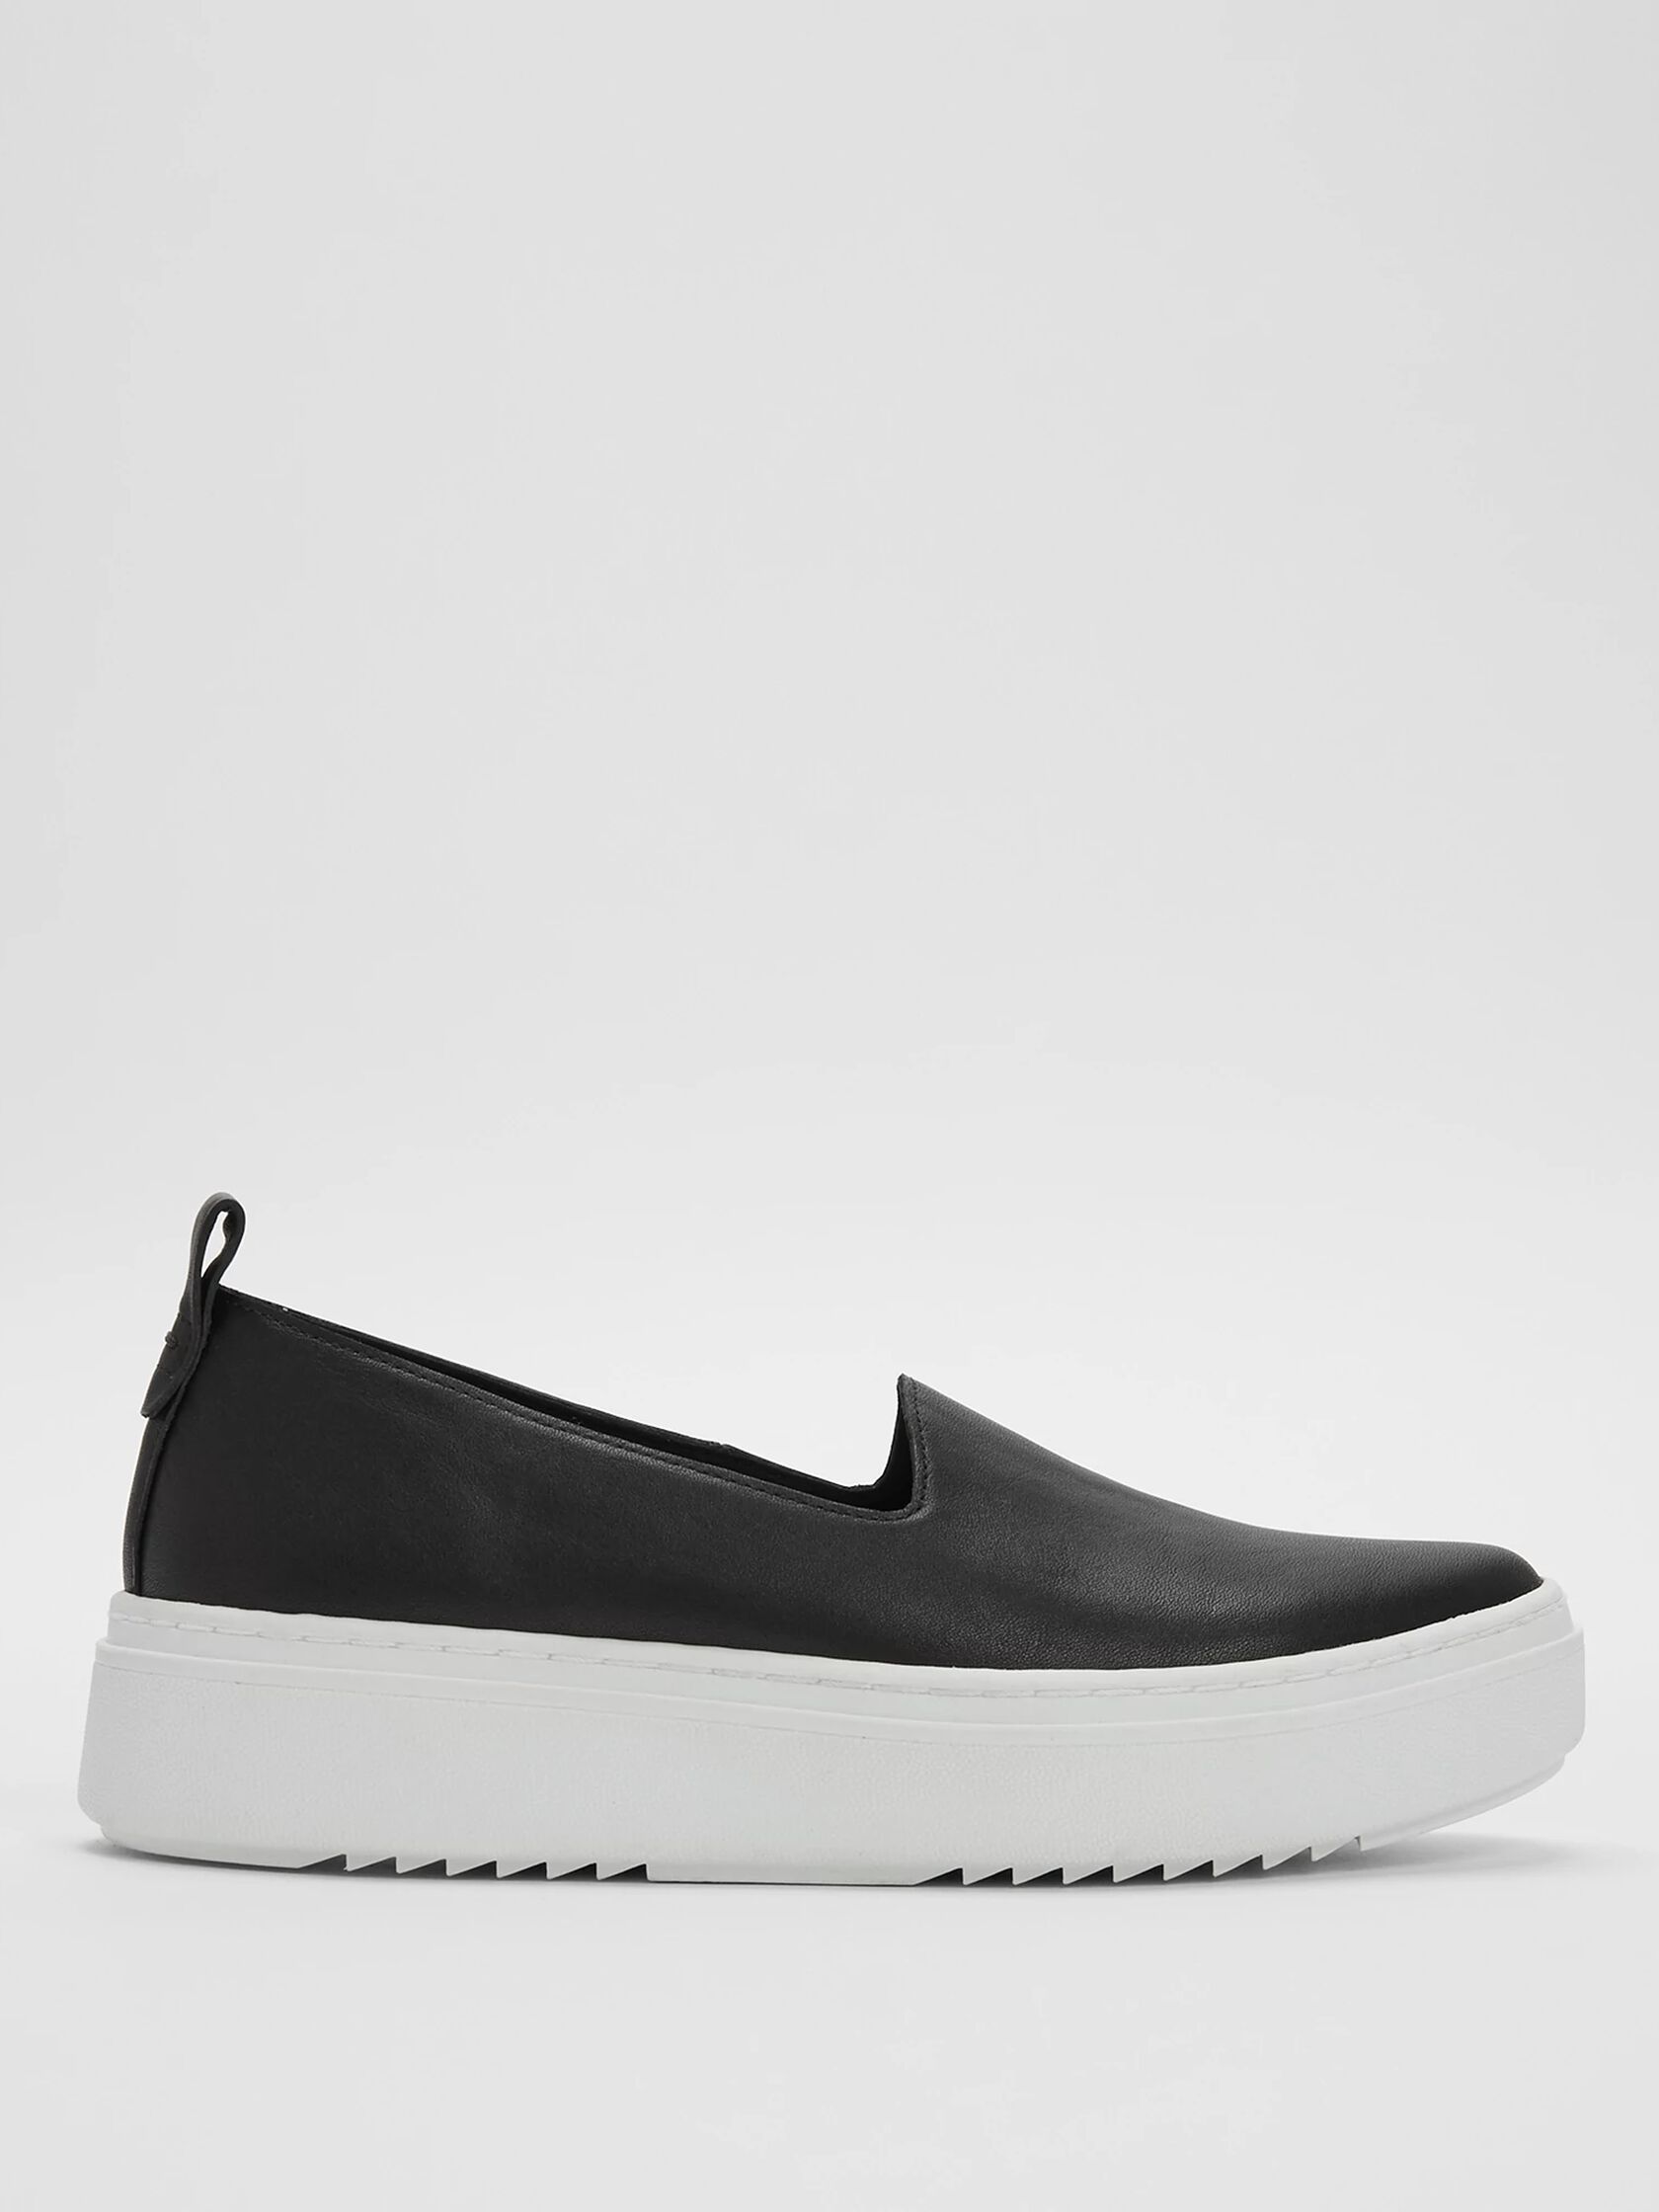 Prosper Platform Sneaker in Leather